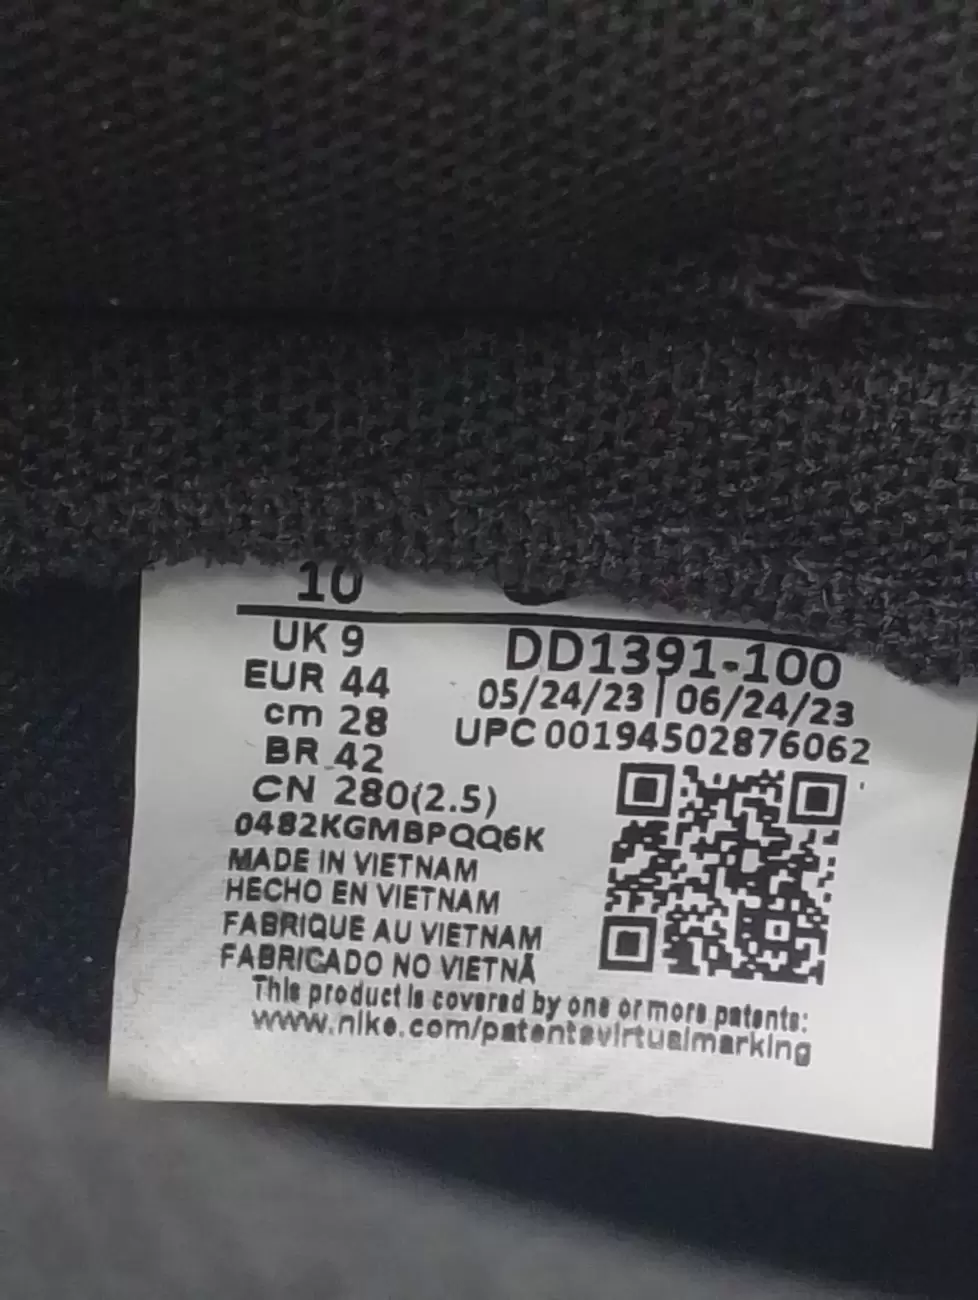 37458 - Nike Dunk Low Retro White Black Panda | Item Details - AfterMarket